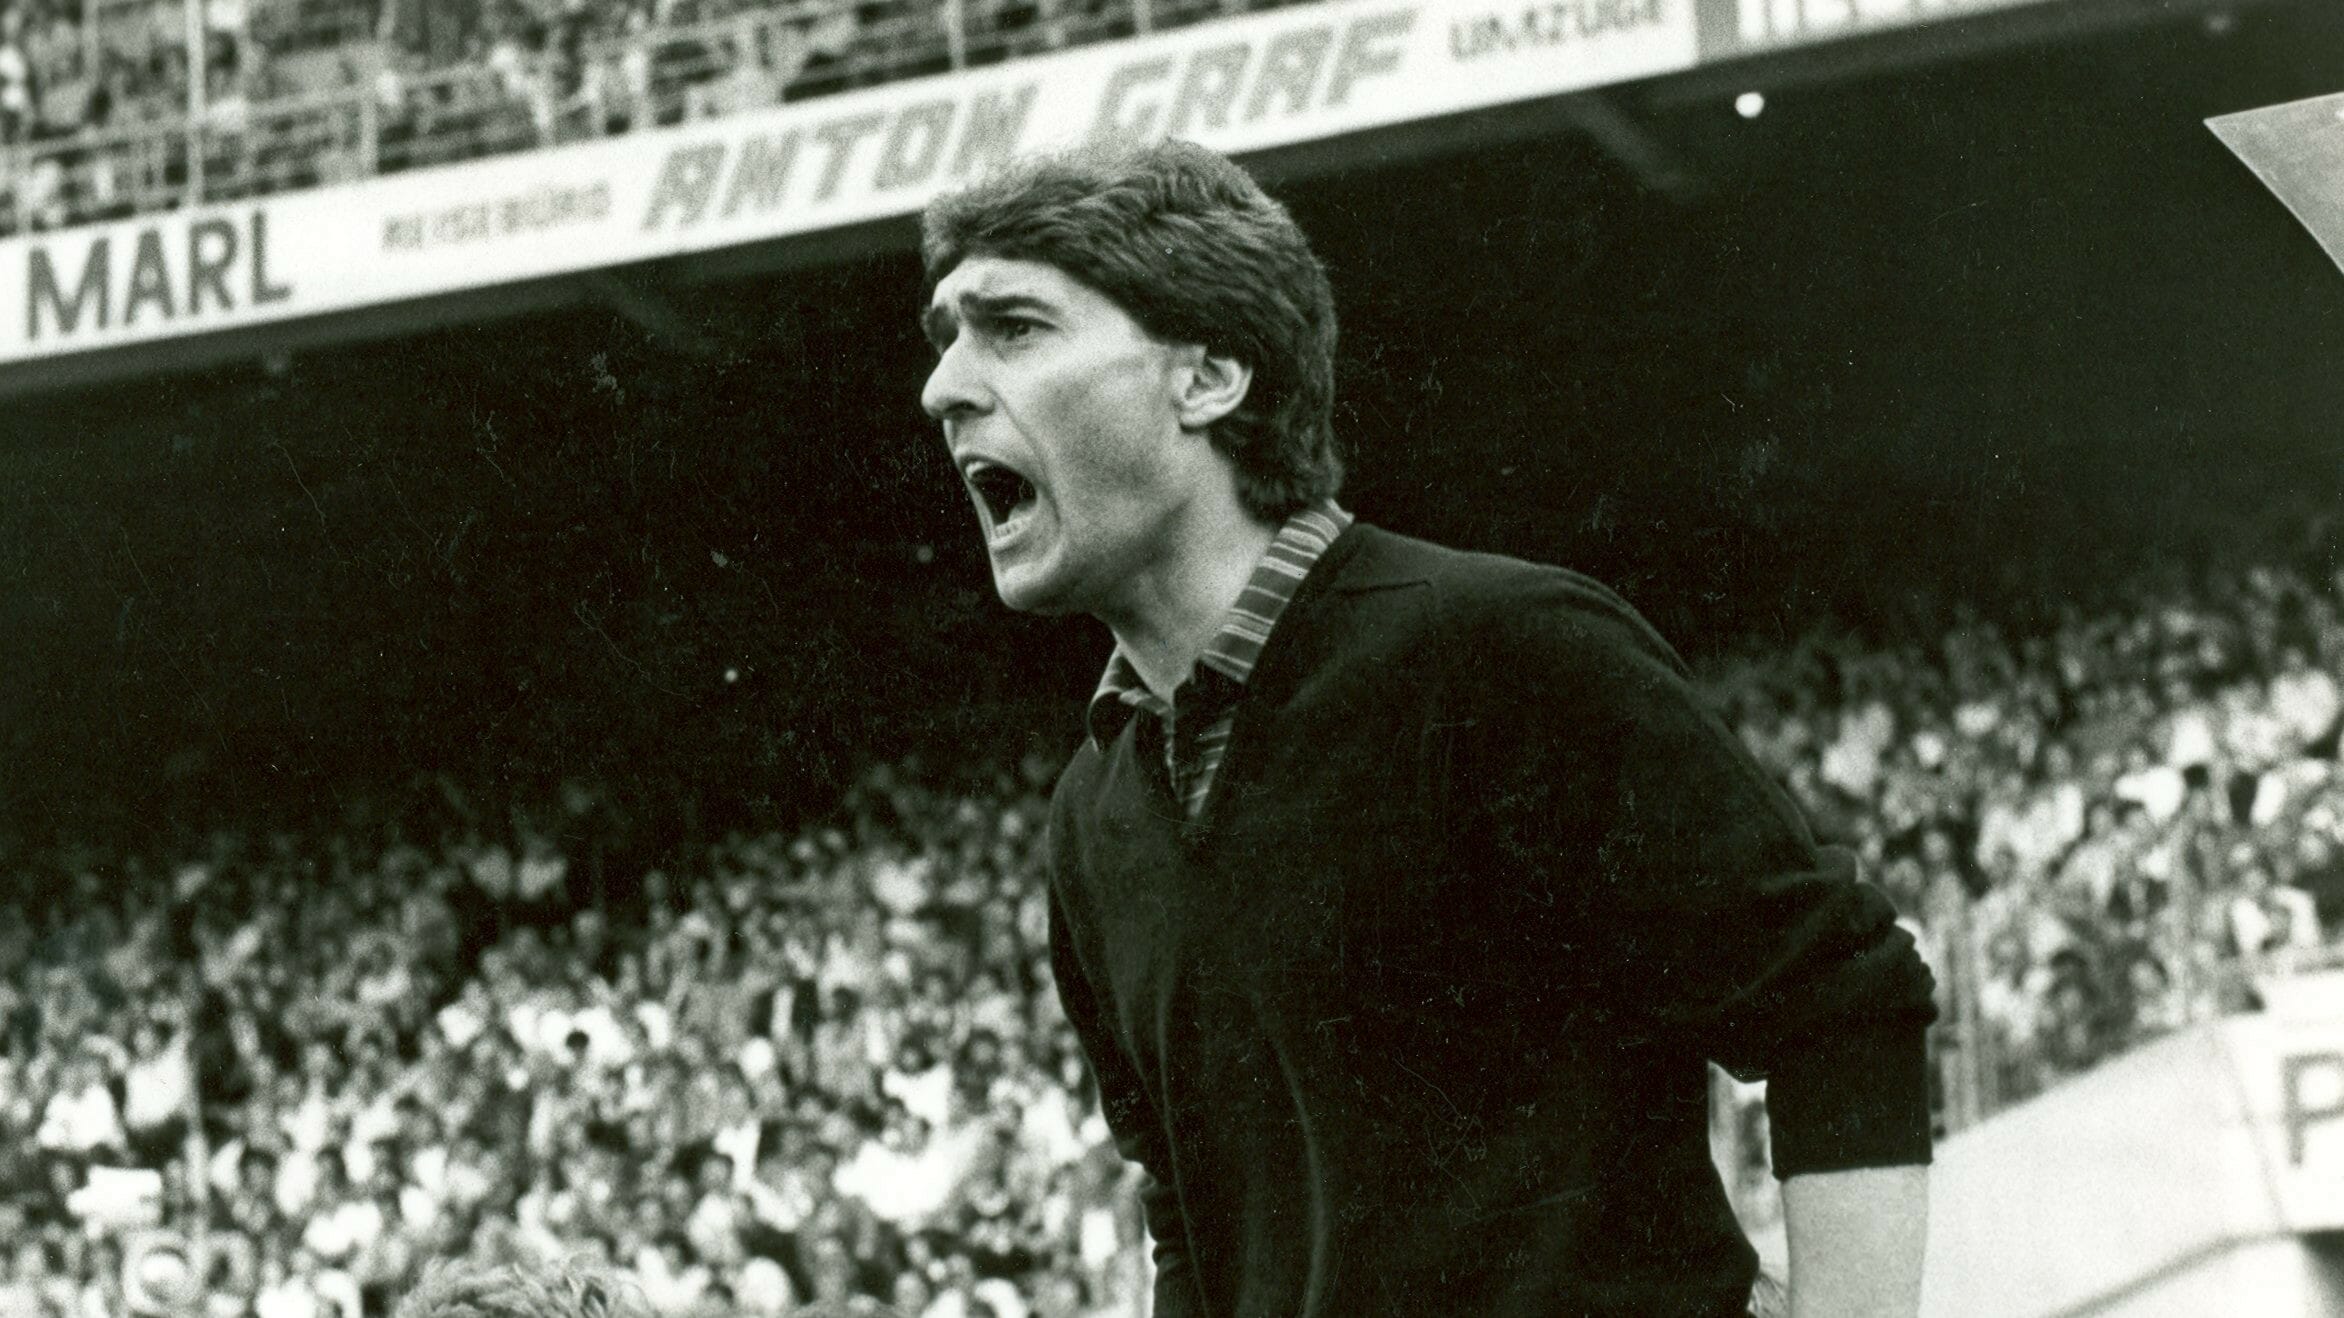 Rudi Aussauer, Trainer 27.5.1981-30.6.1981